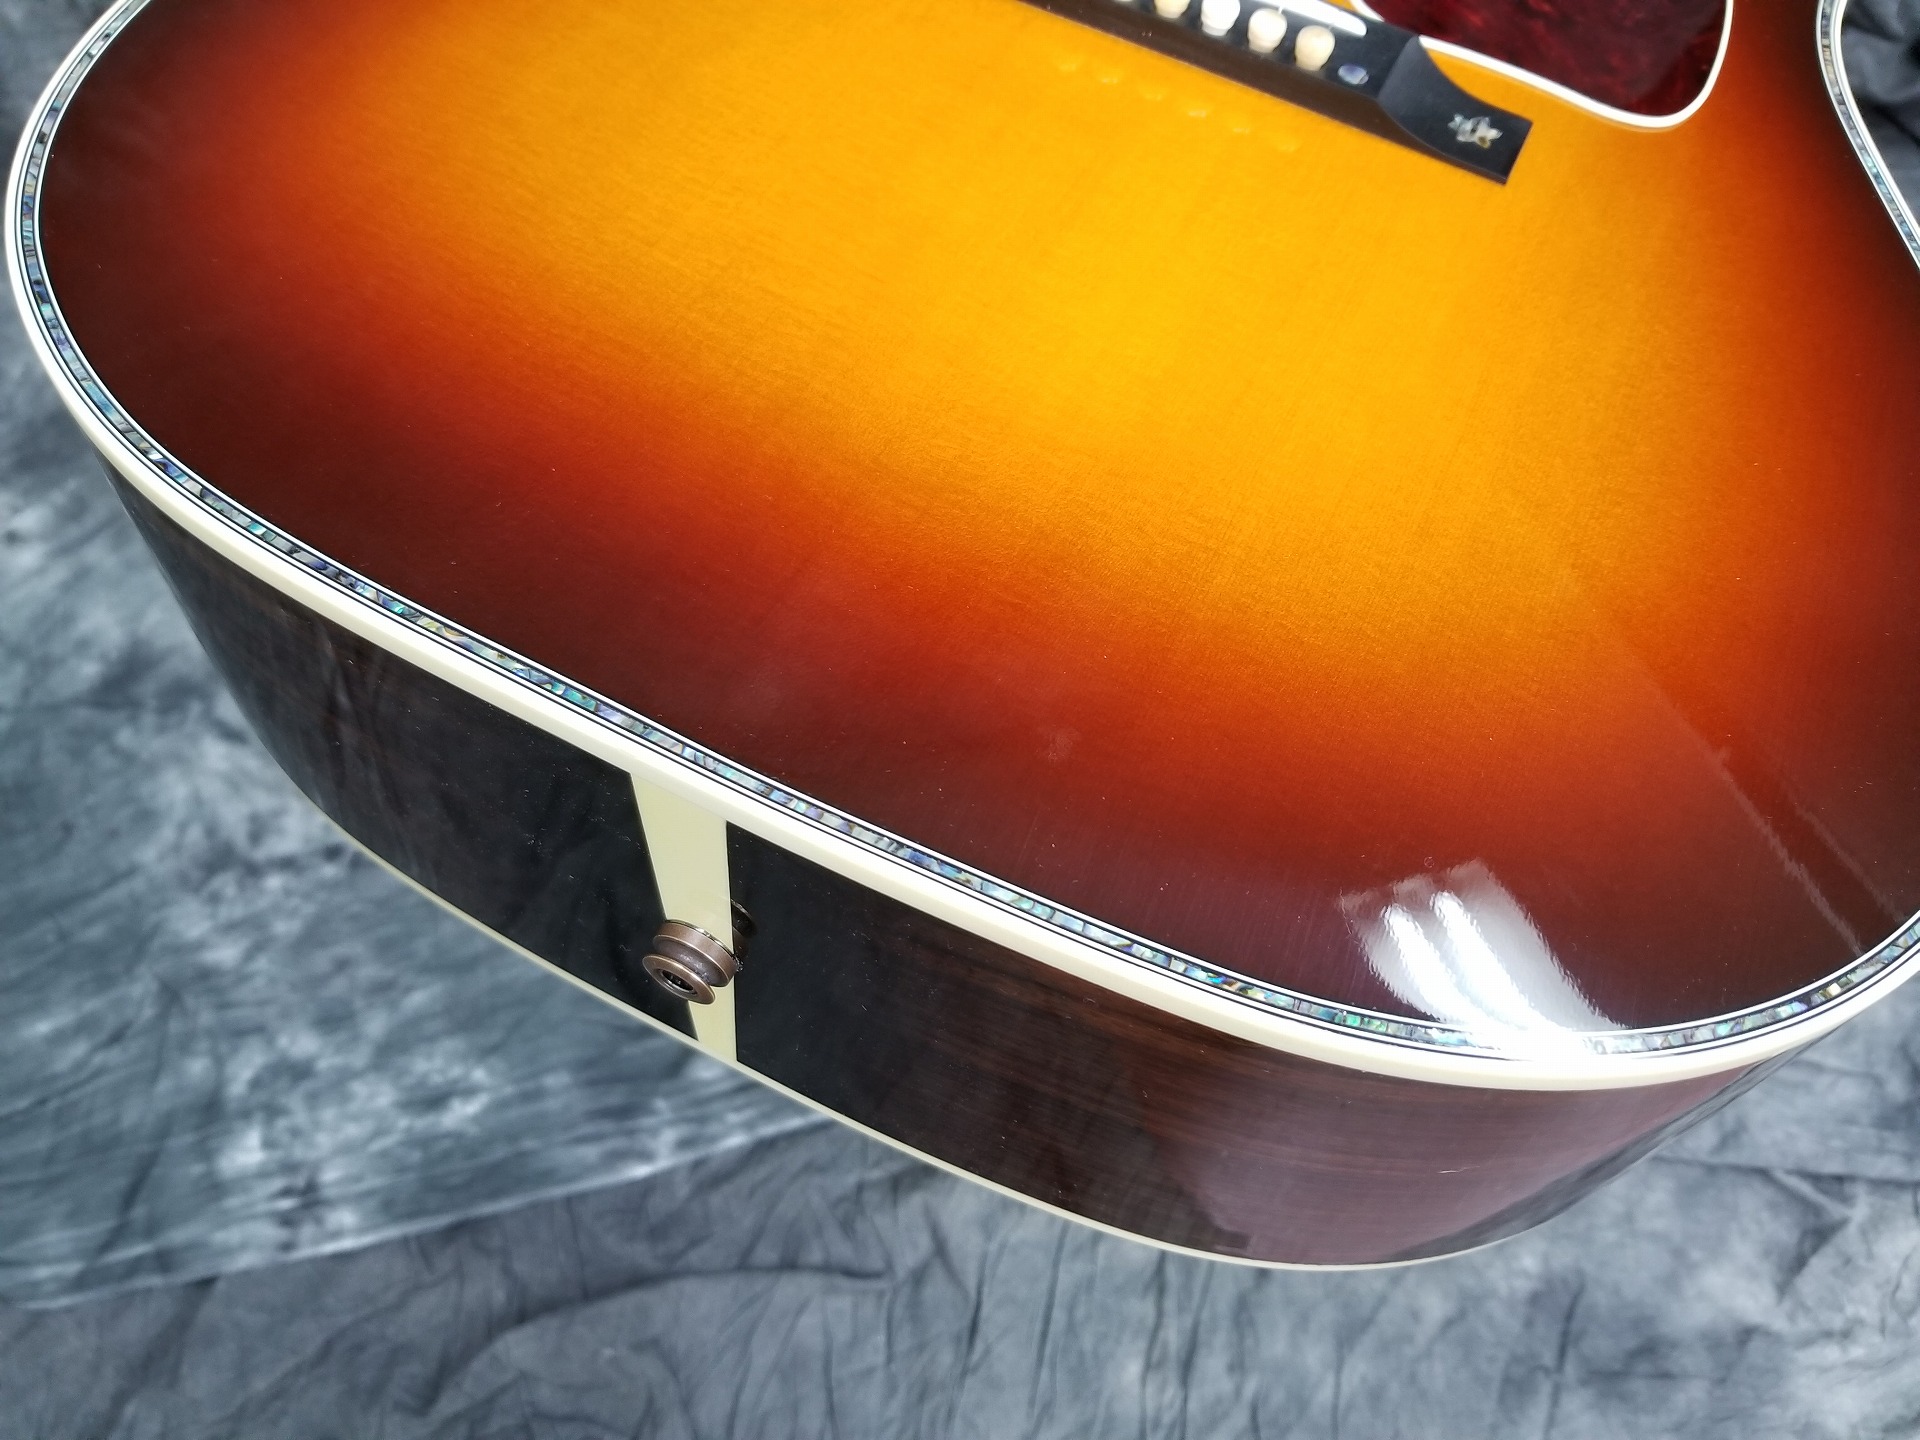 シンガーソングライターに愛されるgibson アコースティック Gibson J 45 Vine Custom 編 Guitarquest イシバシ楽器が送る楽器情報サイト Guitarquest はイシバシ楽器楽器情報サイトです ショッピングサイトでは出来ない高画質写真でスタッフおすすめの楽器をご紹介し